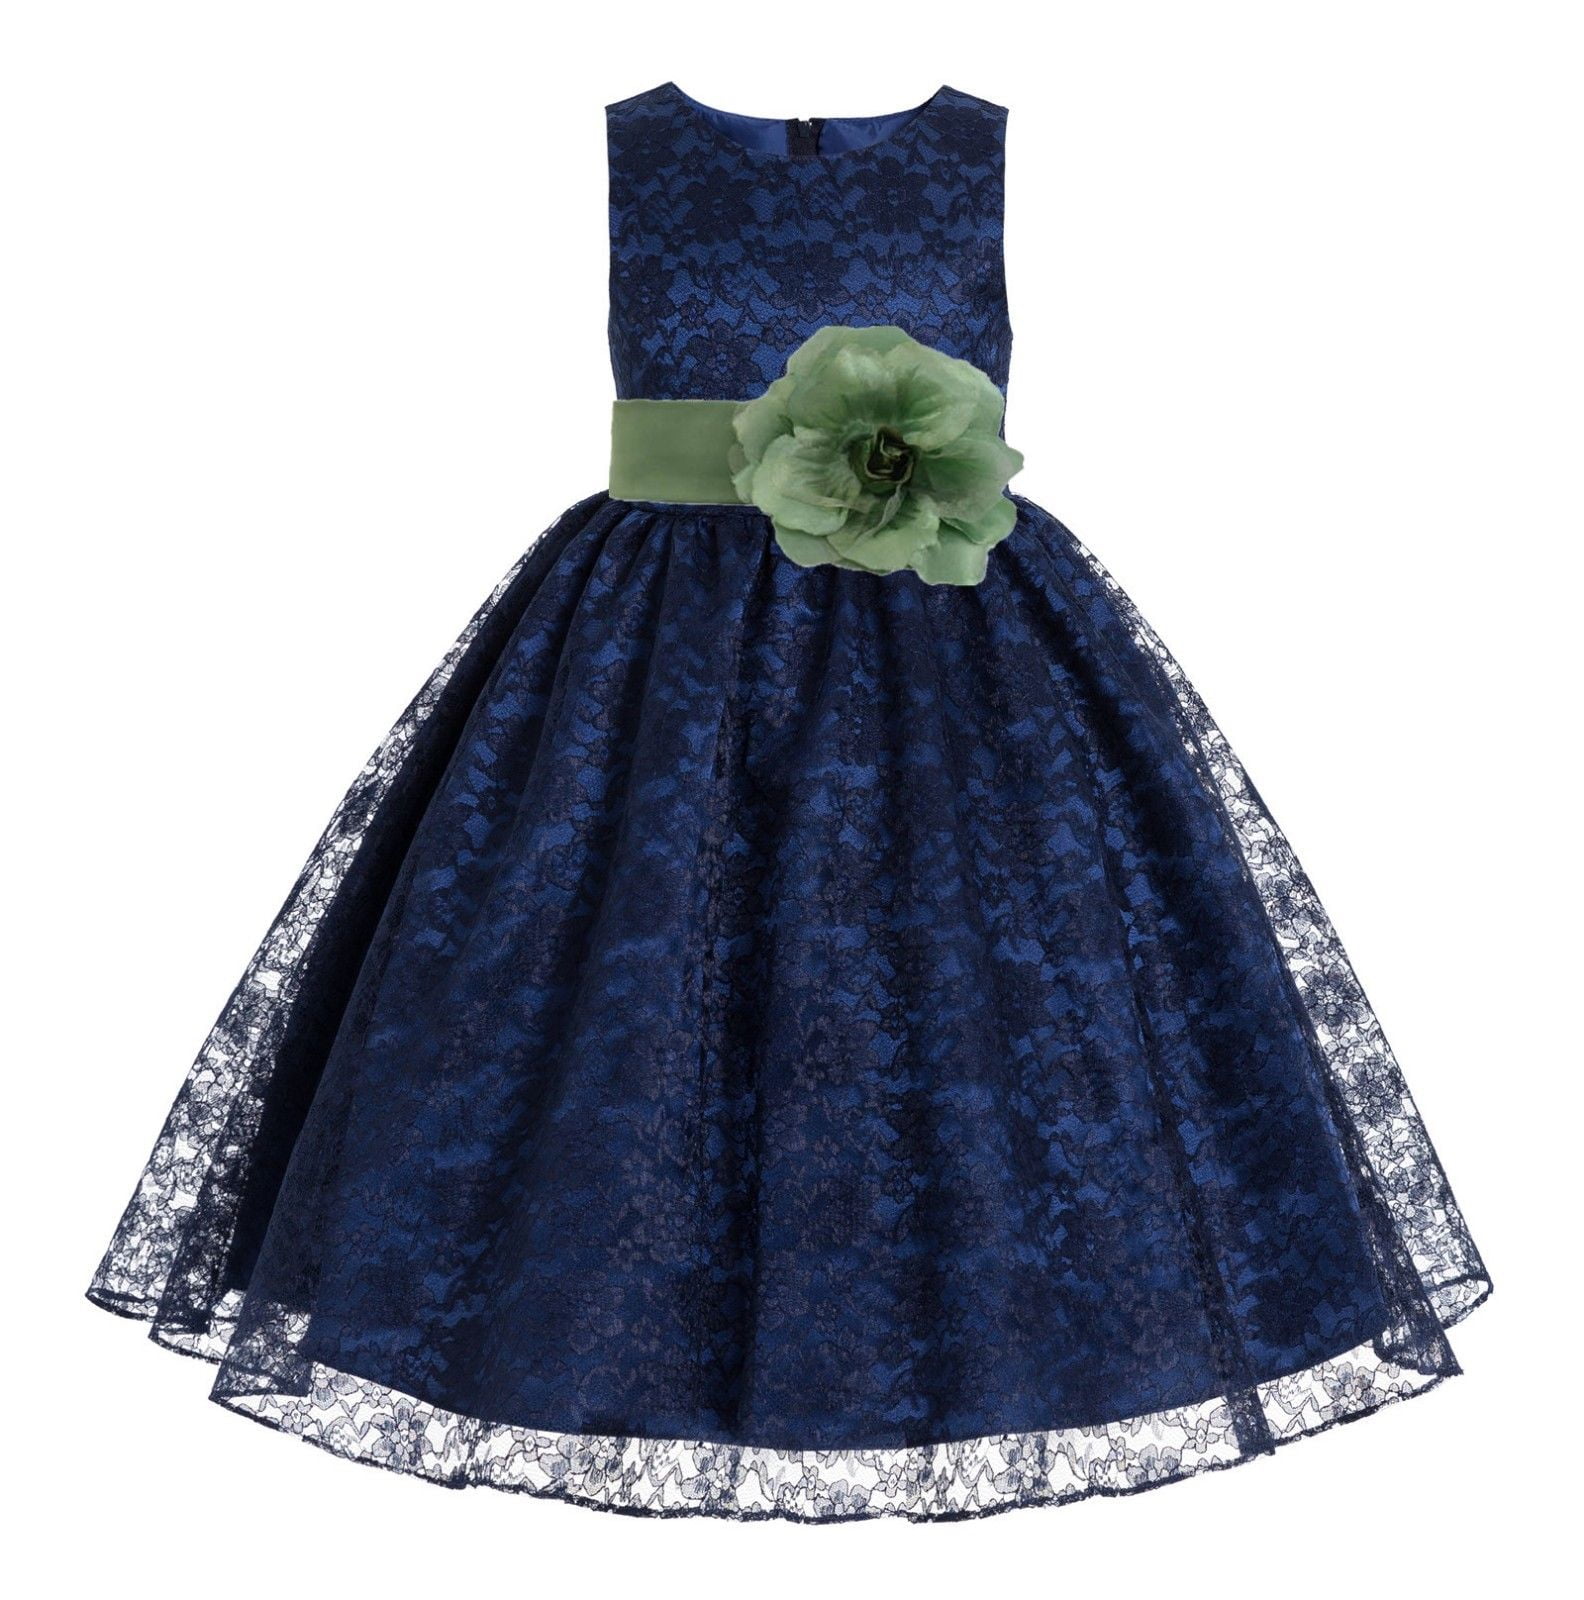 Ekidsbridal - Navy Blue Floral Lace Overlay Flower Girl Dress Special ...